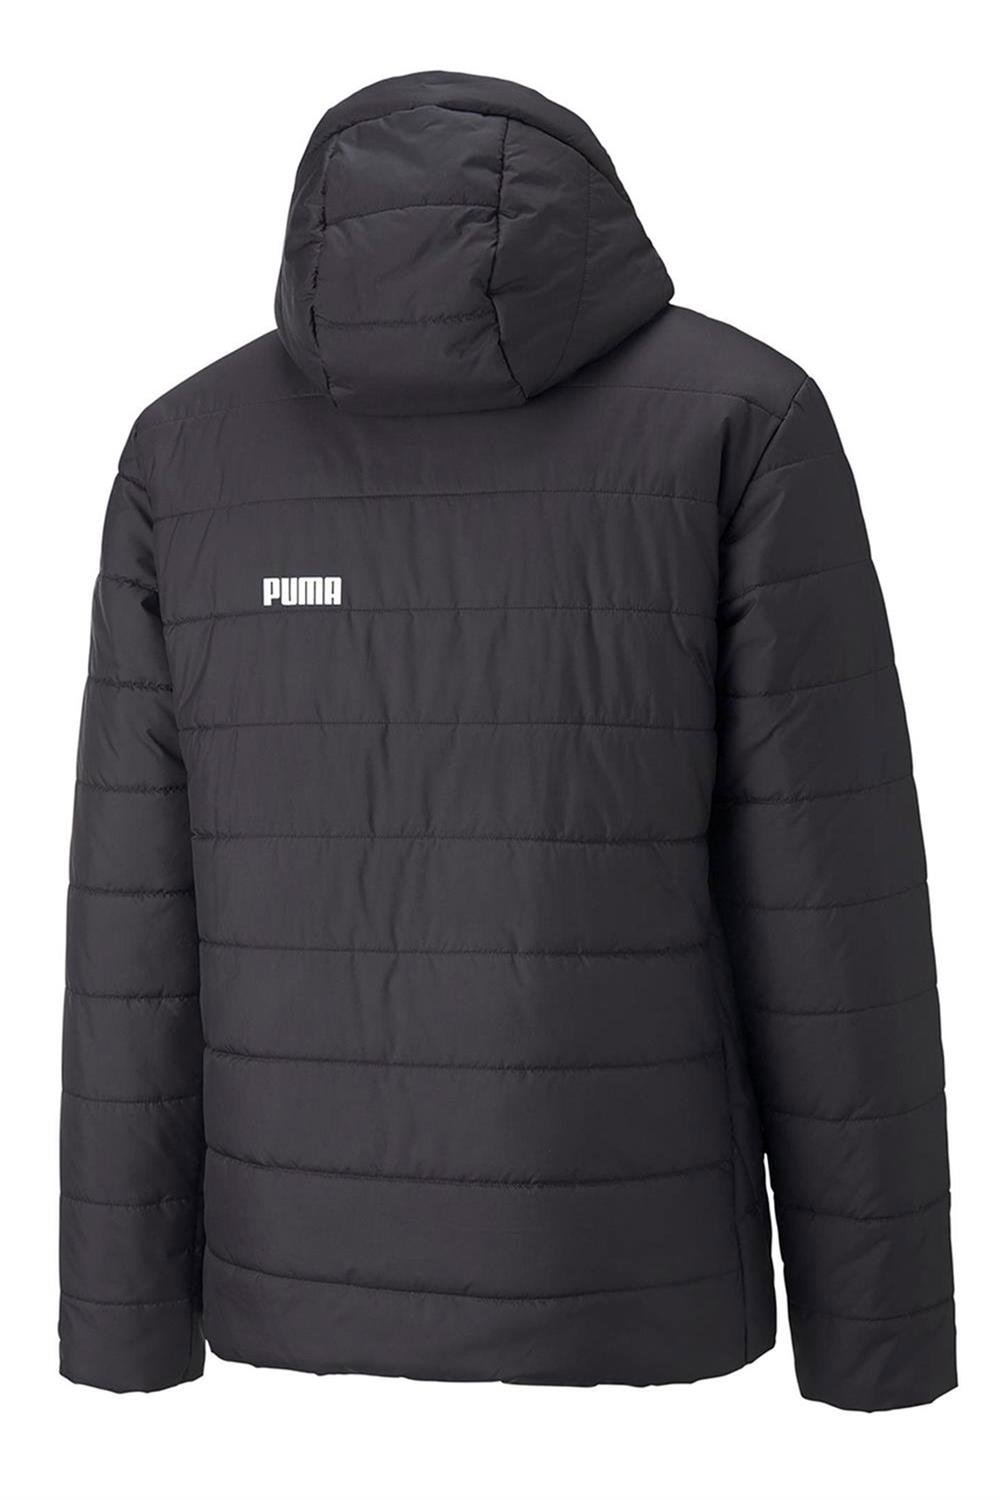 Puma Ess Hooded Padded Jacket Erkek Ceket 84893801 | Sporborsasi.com